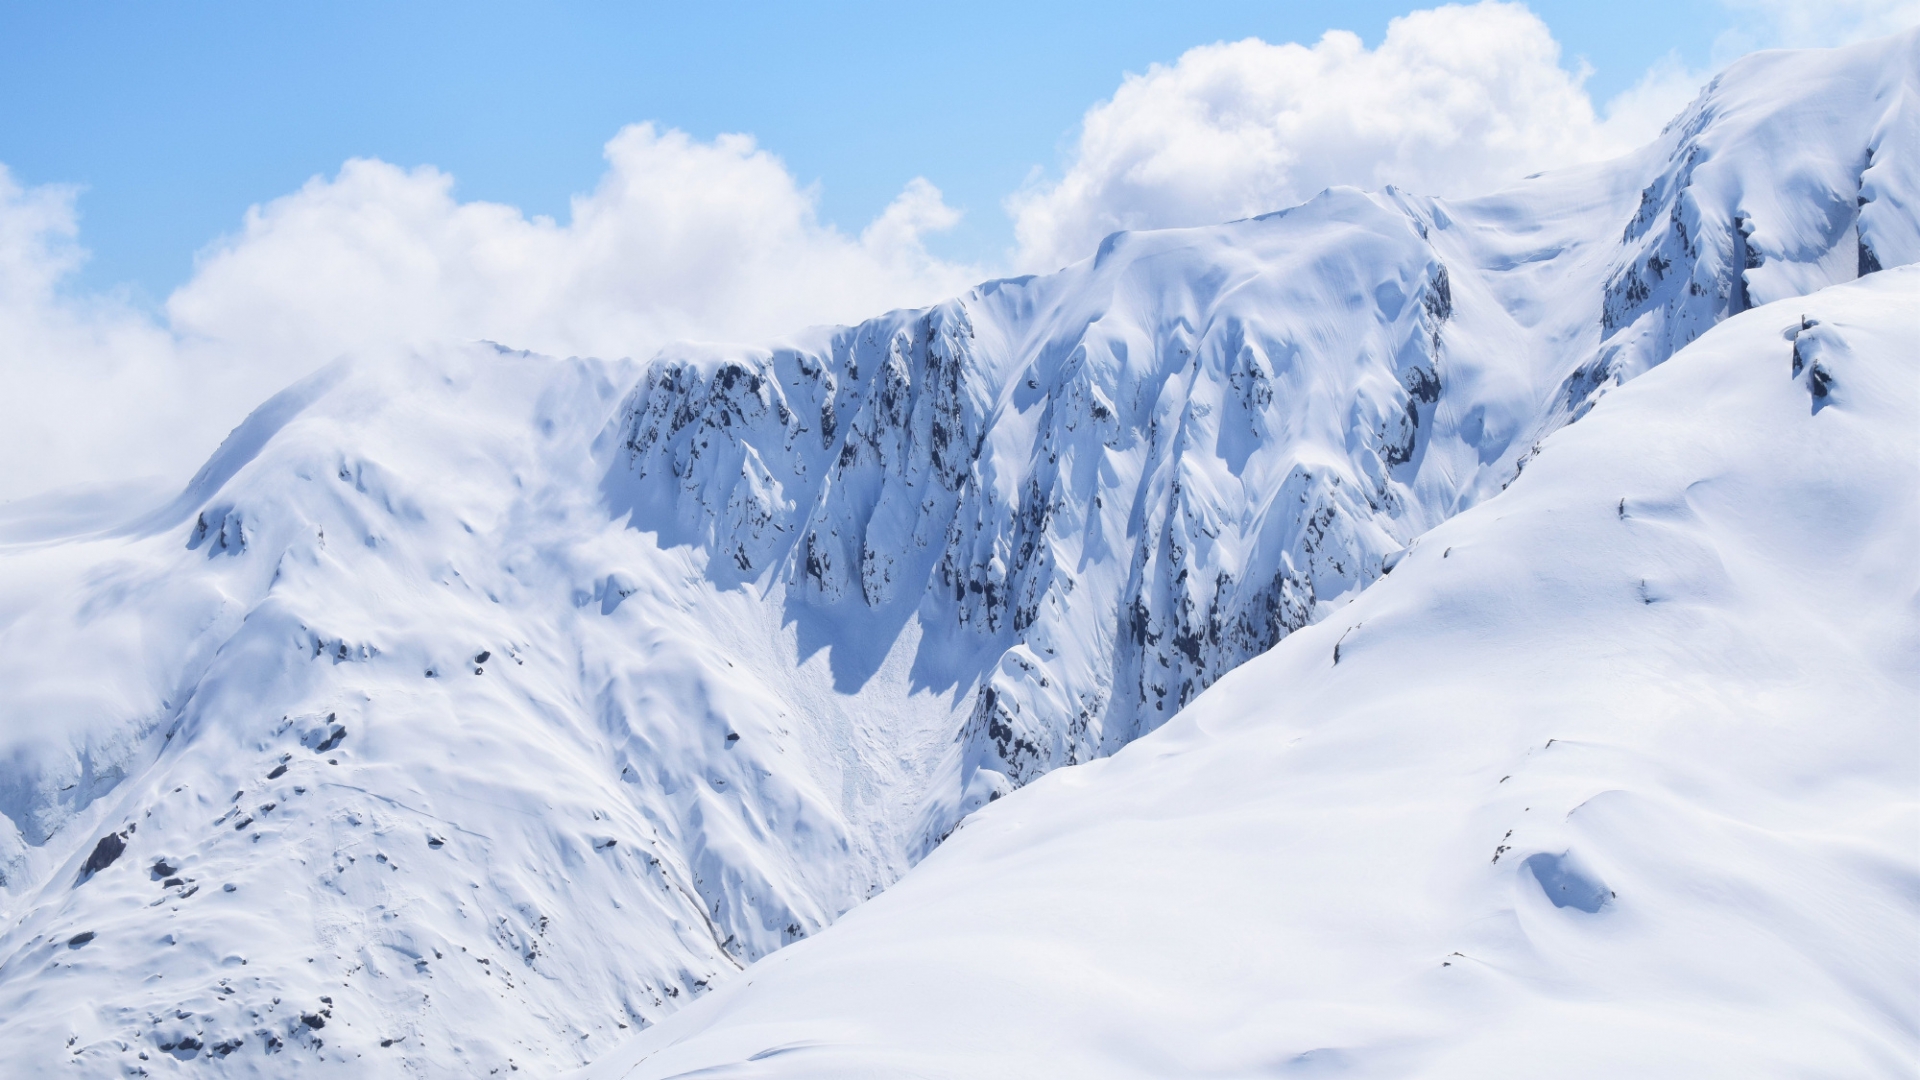 壮观雪山风景自然风光优美风景高清桌面壁纸